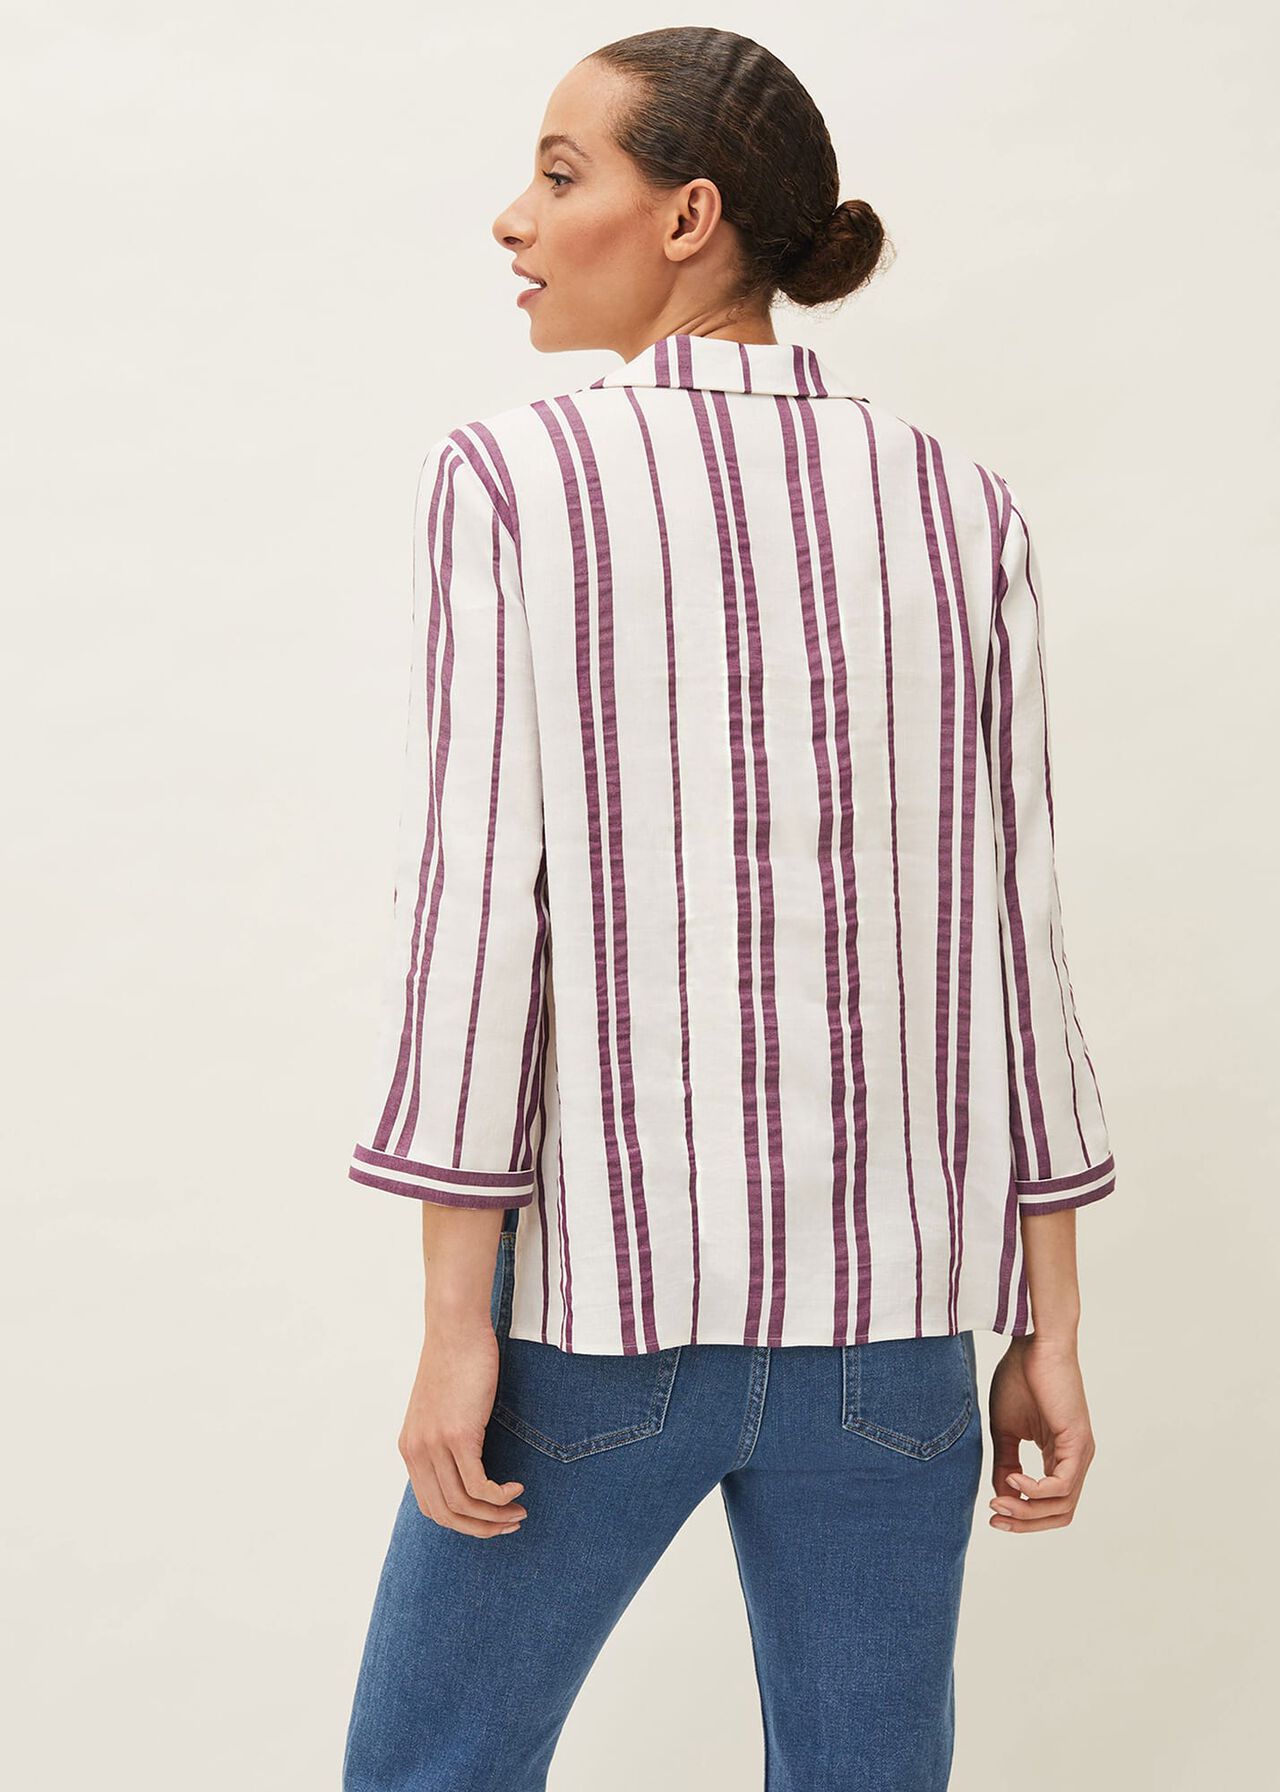 Avaline Stripe Shirt